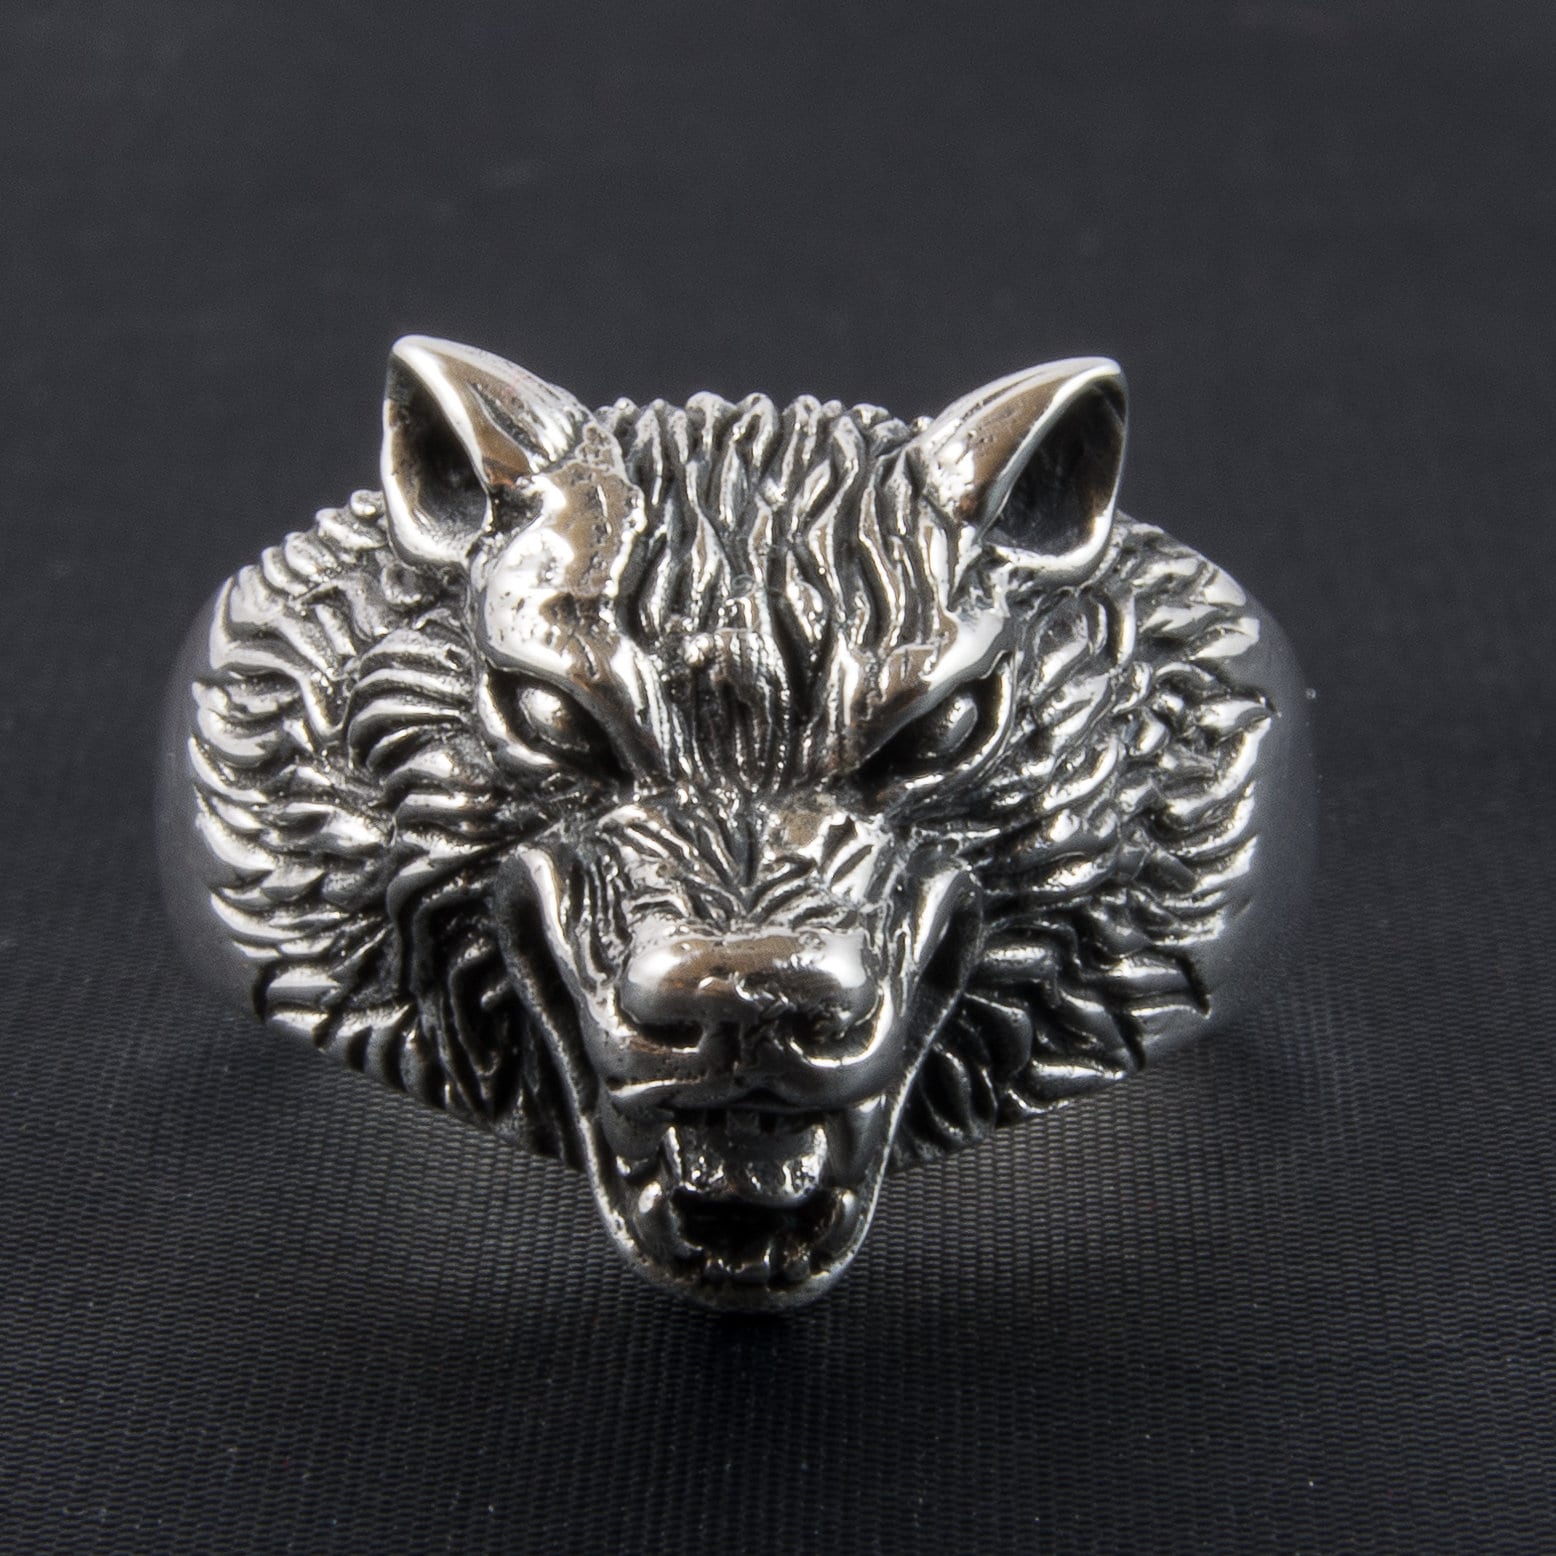 SKYRIM Hircine's Ring | Skyrim jewelry, Featured jewelry, Jewelry